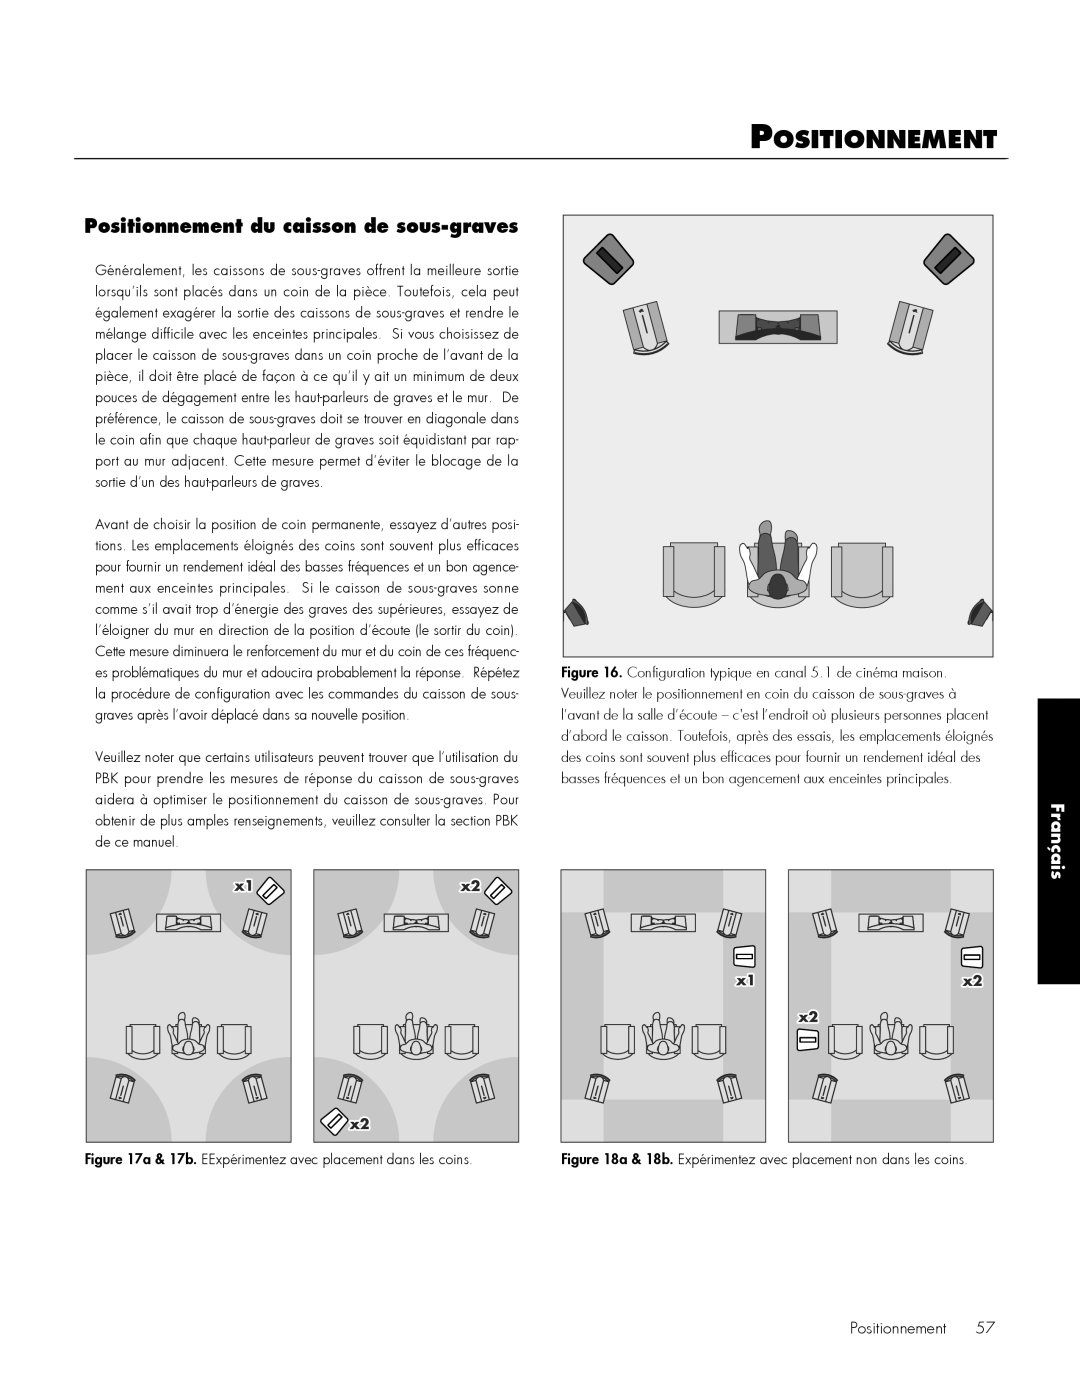 MartinLogan 212, 210 user manual Positionnement du caisson de sous-graves, Français 